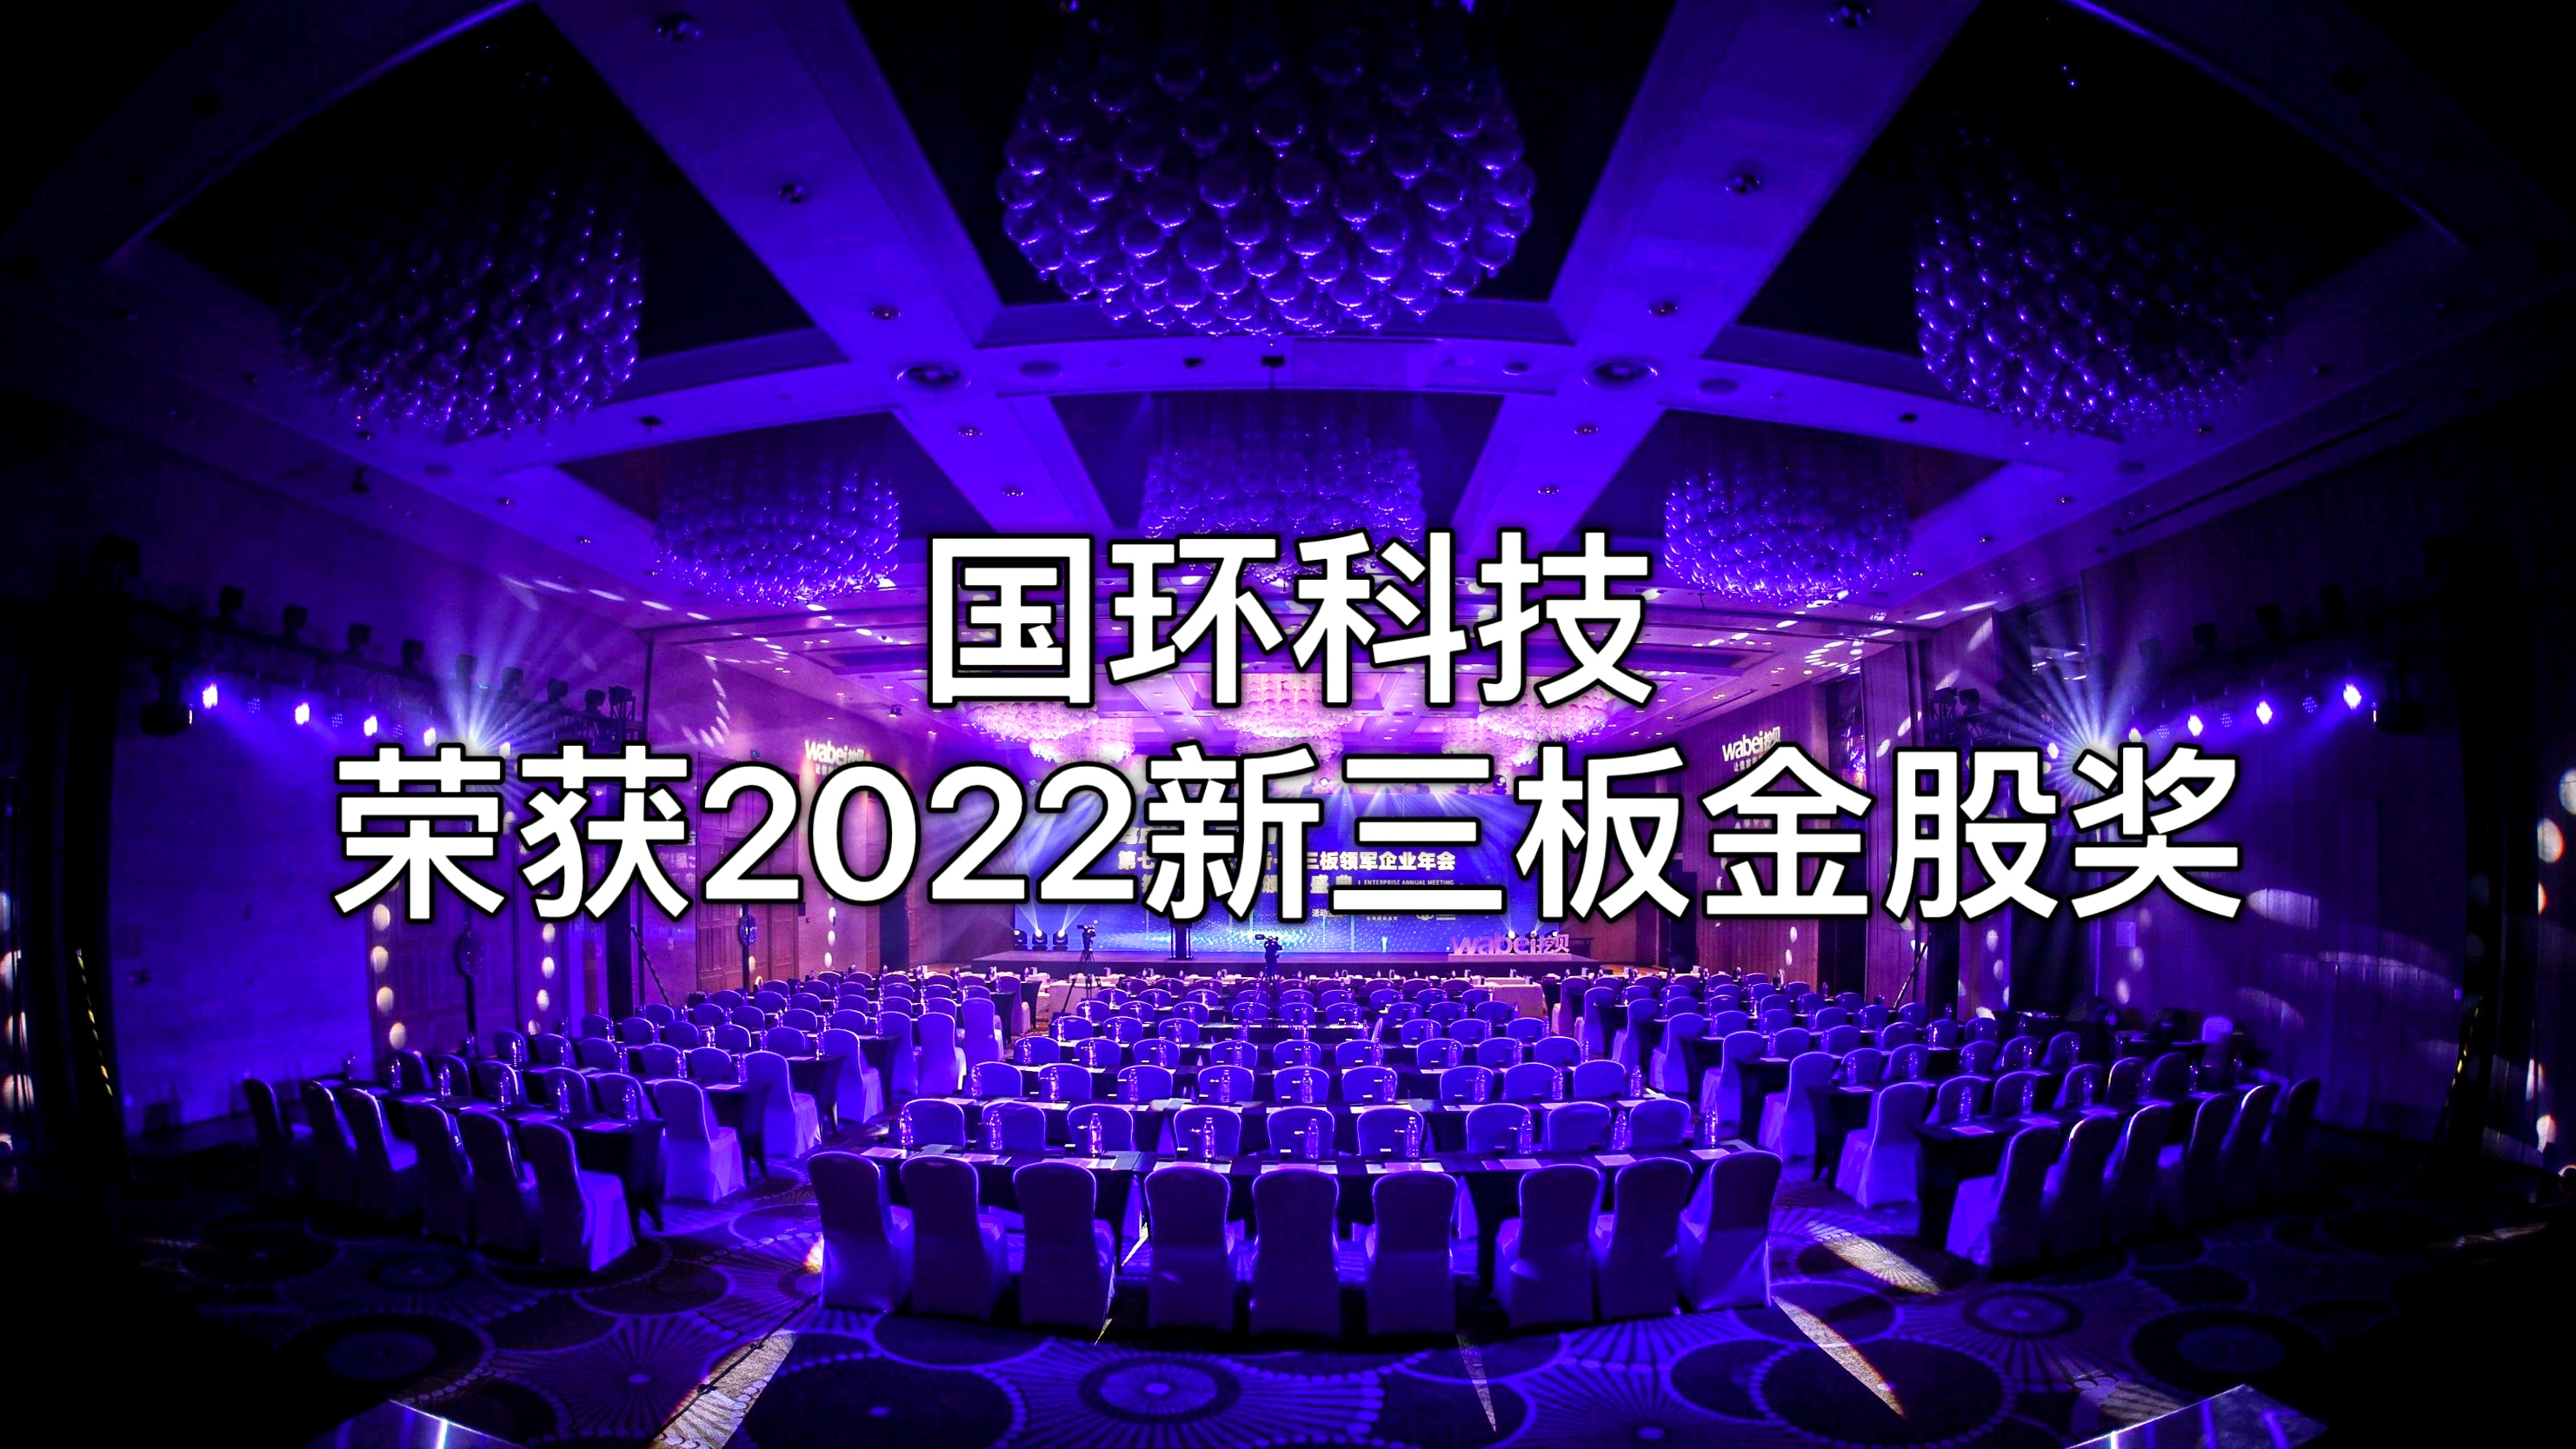 维多利亚vic网址荣获“2022新三板金股奖”